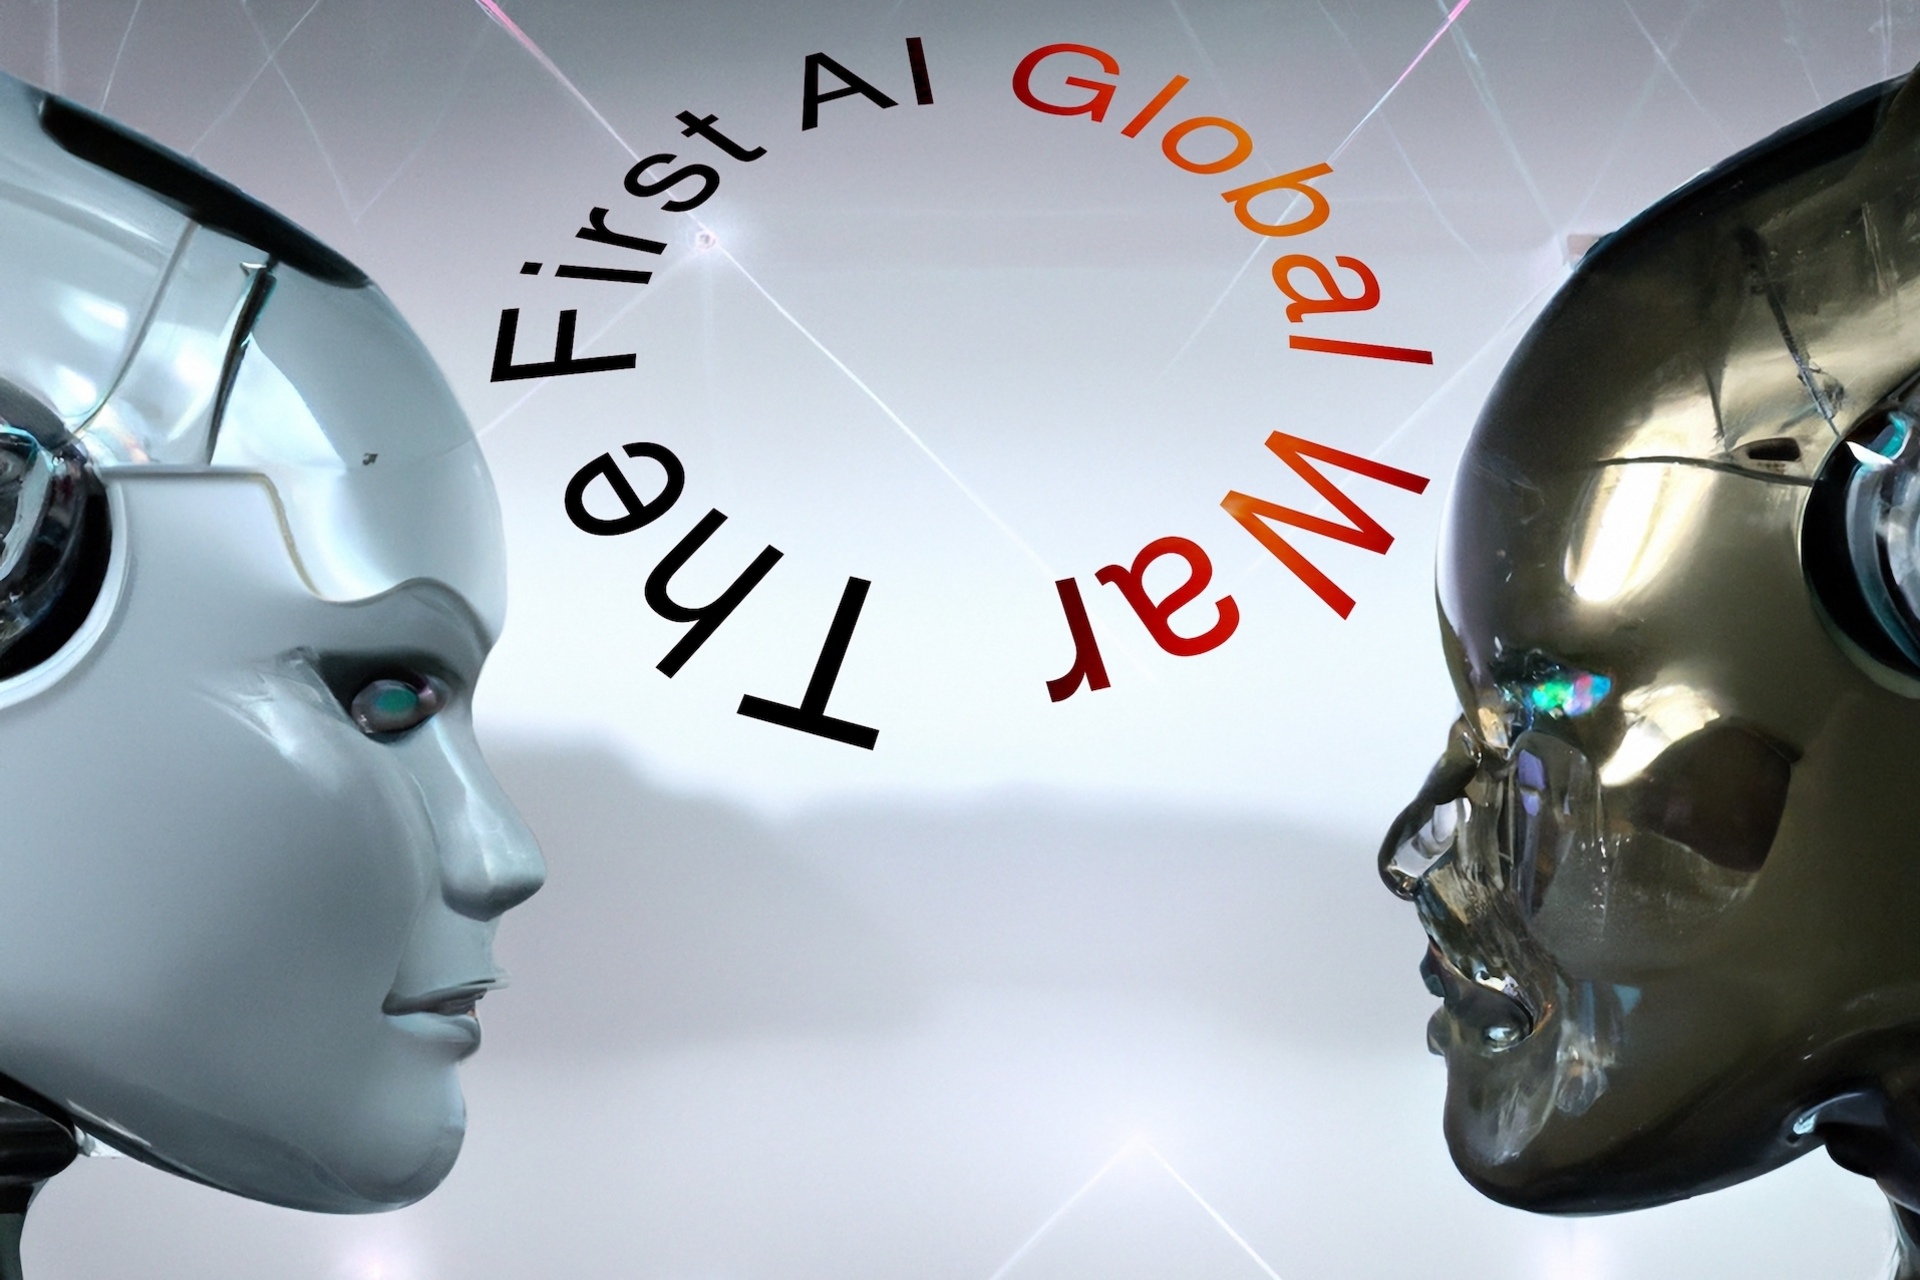 Sztuczna inteligencja: artystyczne przedstawienie „Pierwszej globalnej wojny AI”, dosłownie „Pierwszej wojny światowej sztucznej inteligencji”, stworzone przez autora artykułu wraz z Dall-E